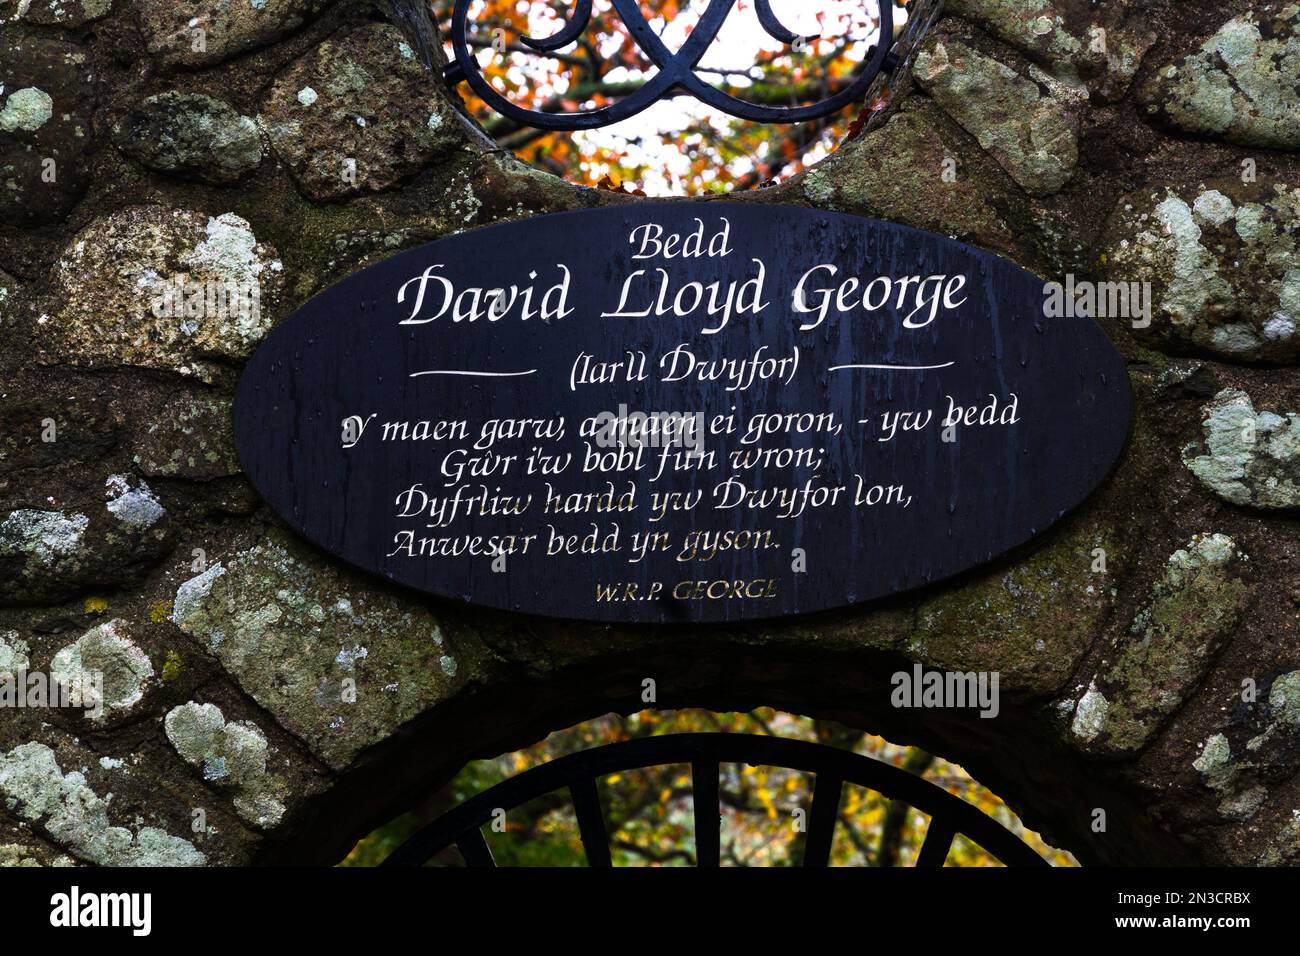 LLANYSTUMDWY, WALES, Großbritannien – NOVEMBER 21: Plaque des liberalen Premierministers David Lloyd George aus nächster Nähe. Entworfen von Clough Williams-Ellis. Ich Weiß Nicht, Cri Stockfoto